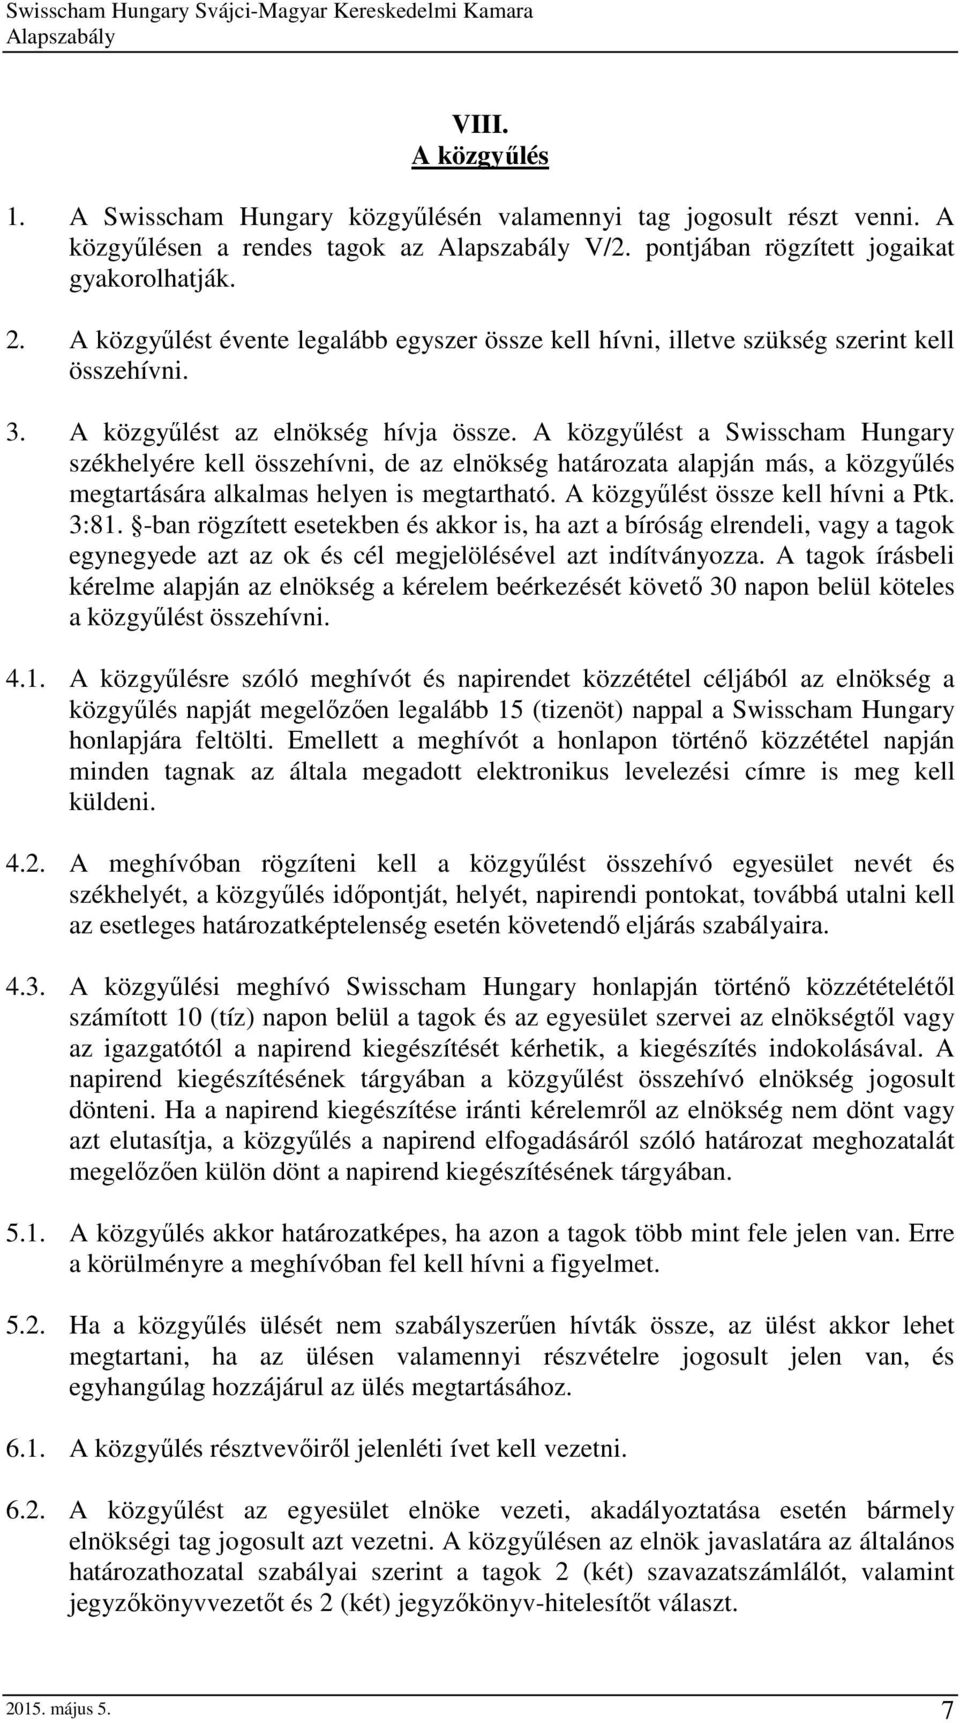 A közgyűlést a Swisscham Hungary székhelyére kell összehívni, de az elnökség határozata alapján más, a közgyűlés megtartására alkalmas helyen is megtartható. A közgyűlést össze kell hívni a Ptk. 3:81.